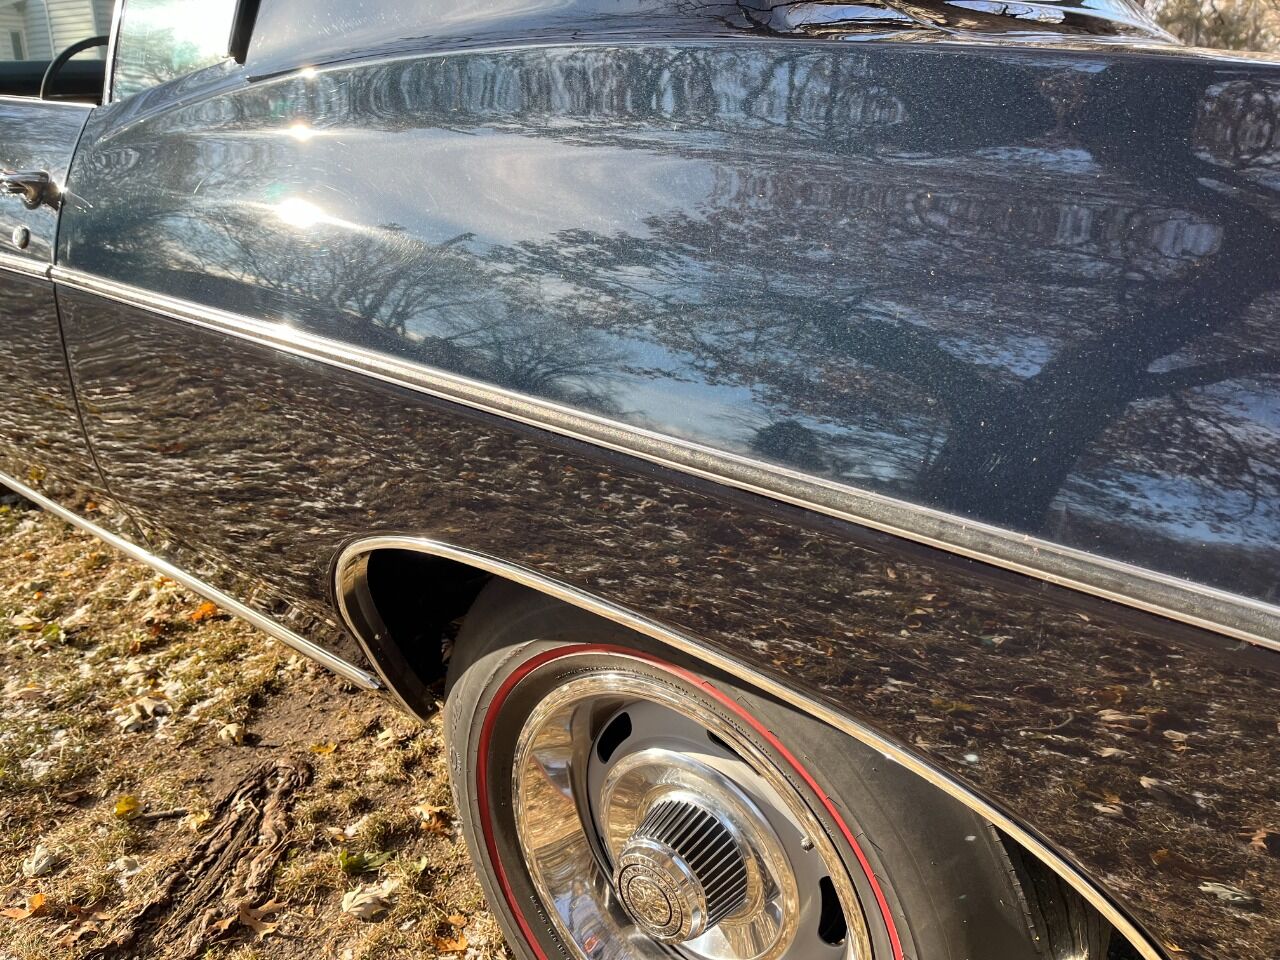 1968 Chevrolet Impala 40